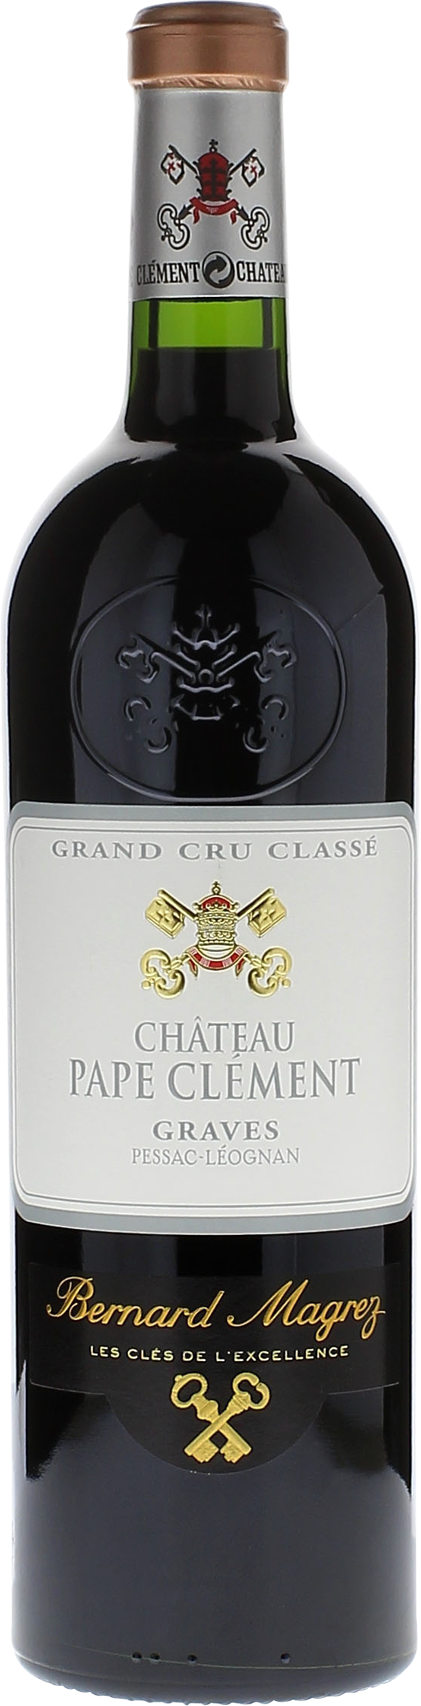 Pape clement rouge 2008 Grand Cru Class Pessac-Lognan, Bordeaux rouge